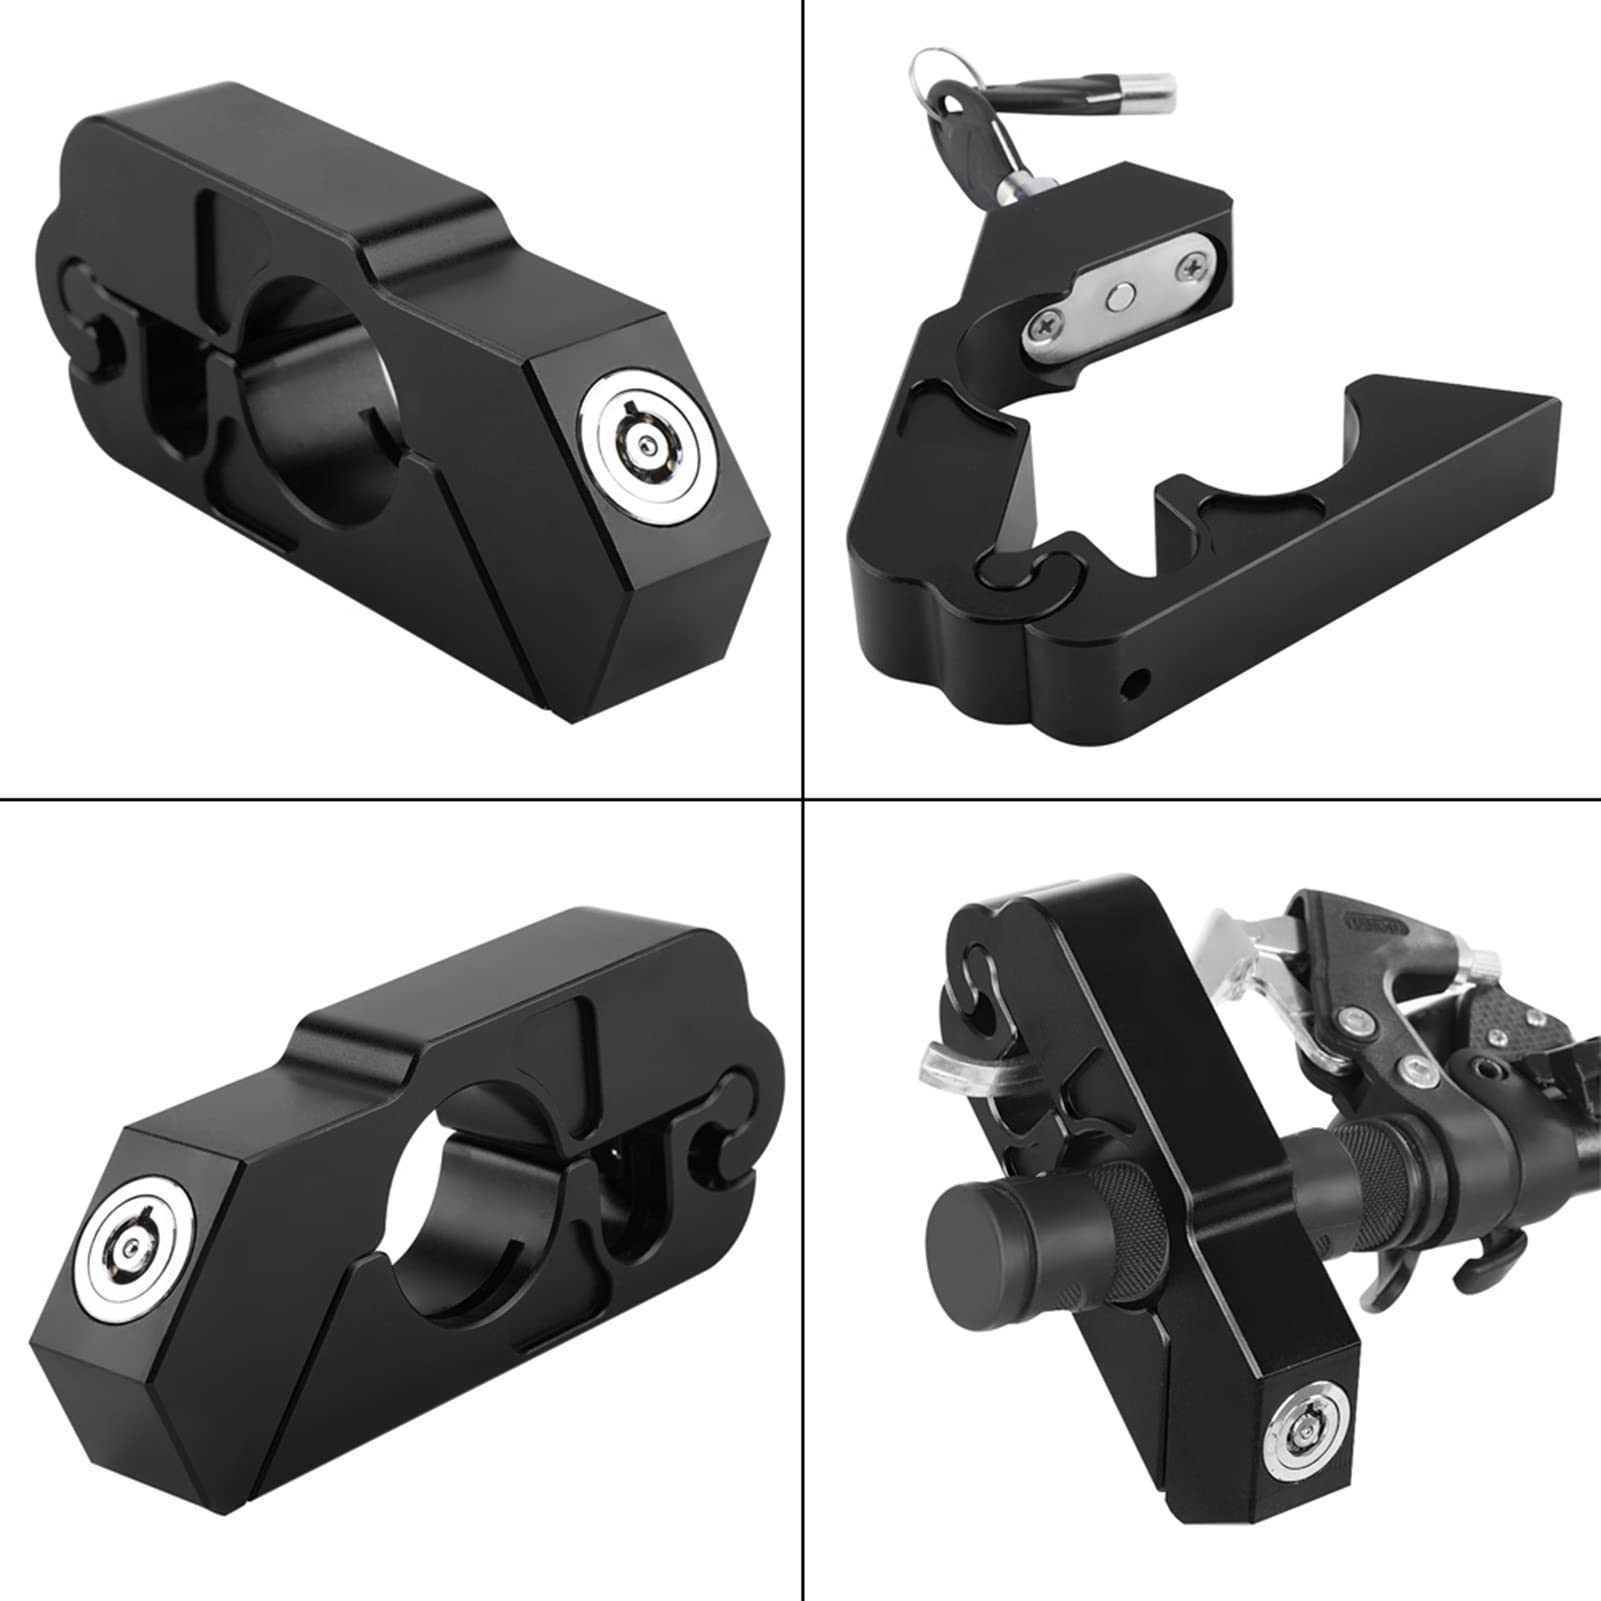 Grip Lock CNC Aluminiumlegierung Motorrad Lenker Bremshebelschloss Fahrzeugsicherheit für Universal Motorrad ATVs (Schwarz)